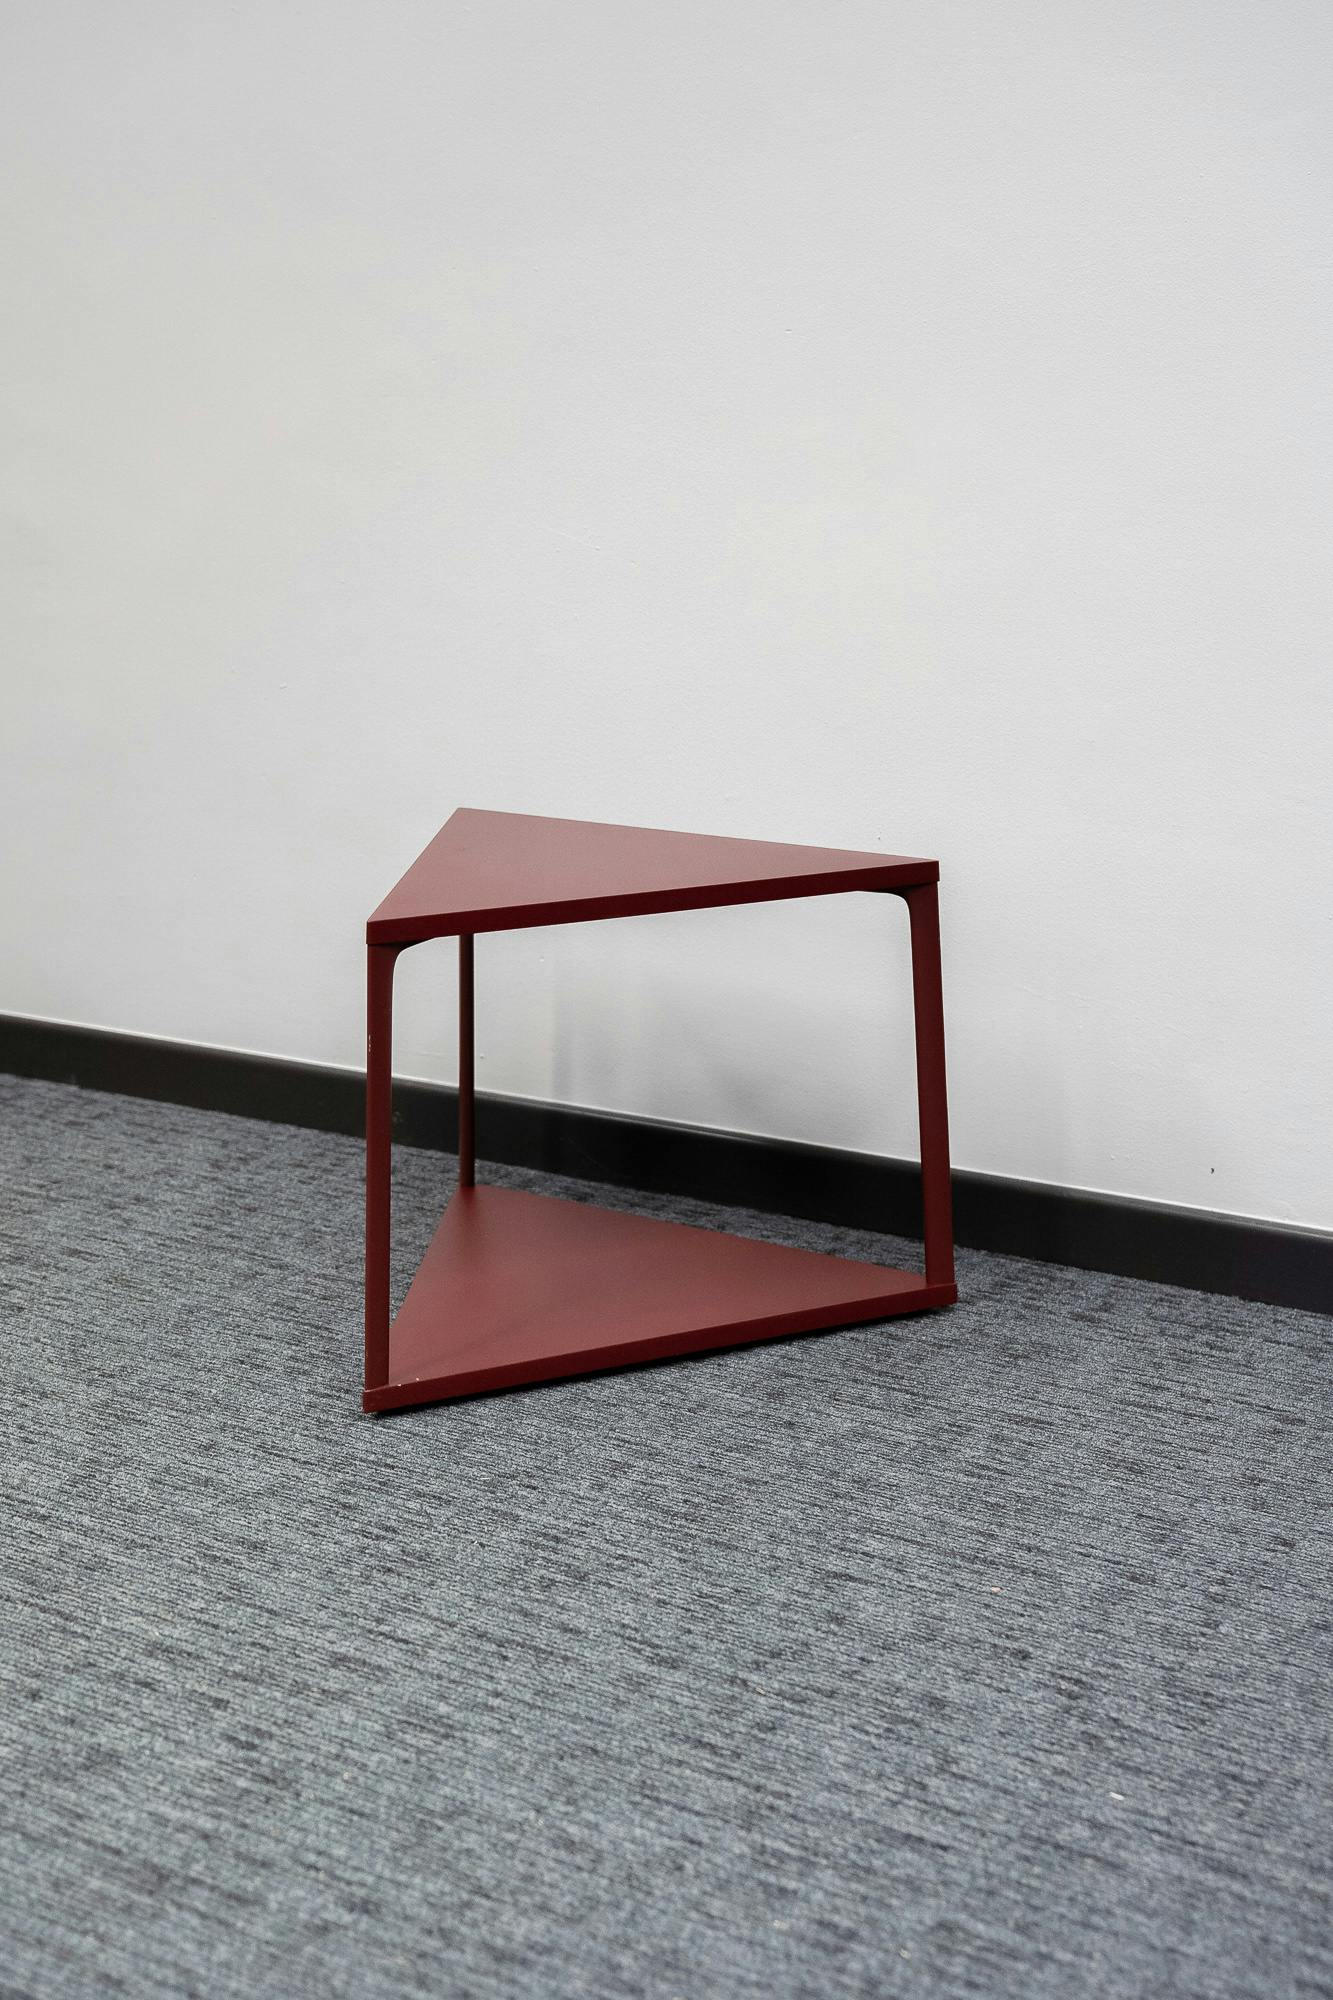 Rode driehoekige salontafel - Tweedehands kwaliteit "Tafels" - Relieve Furniture - 2